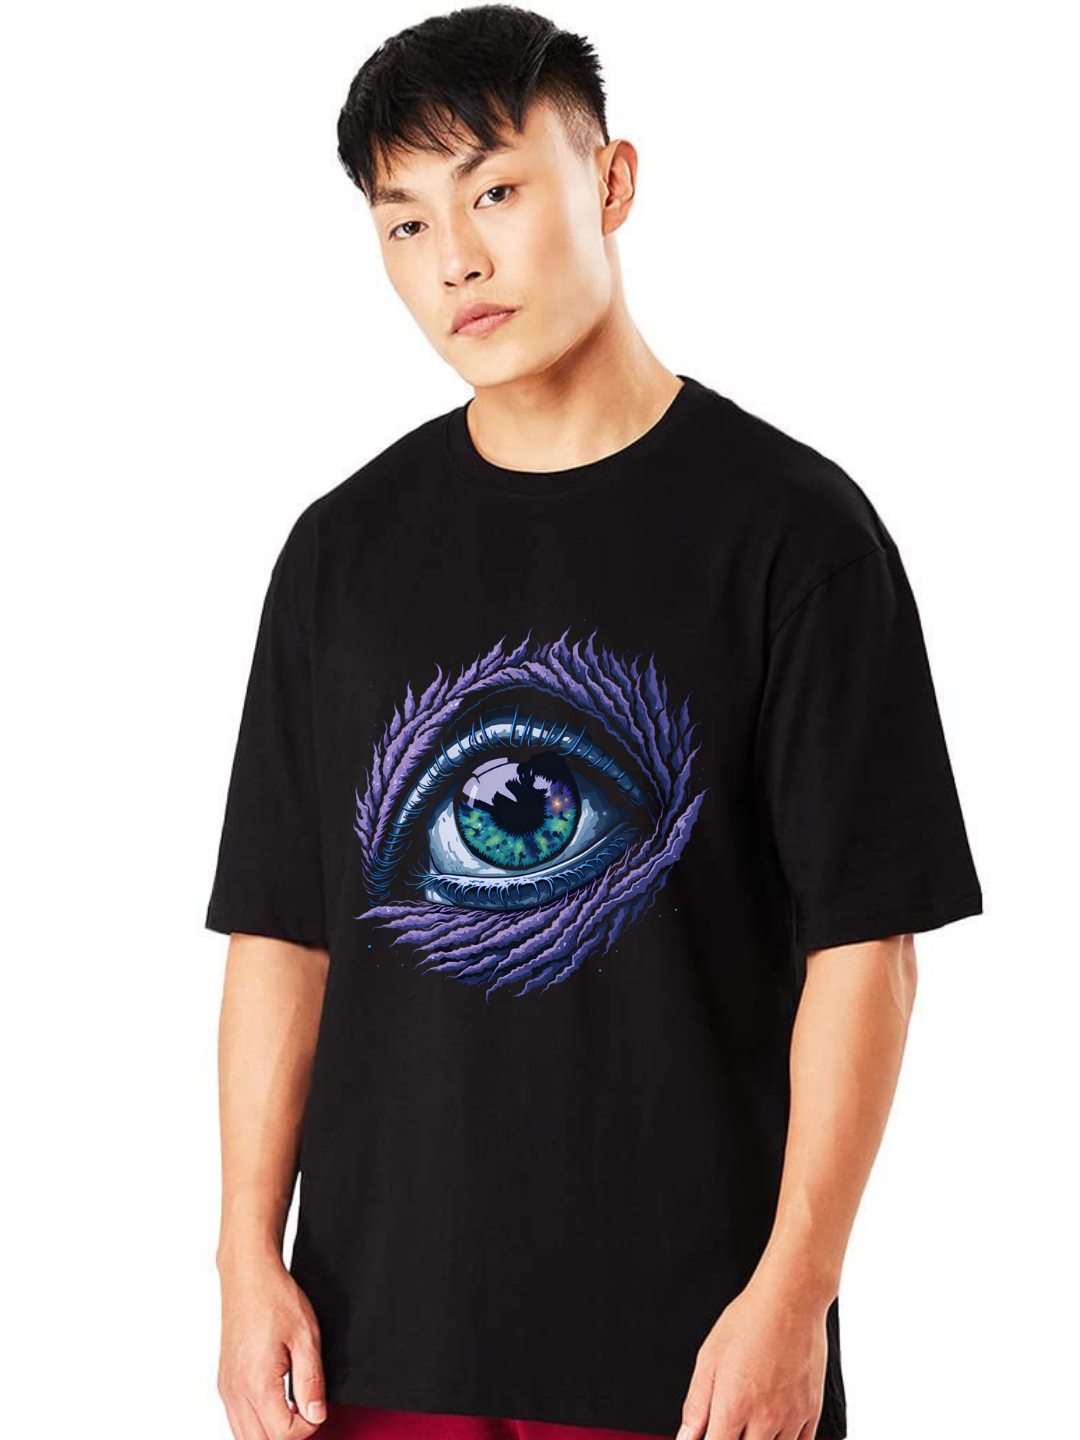 Painfull Eyes Oversized T-Shirt - Oversized T-Shirt